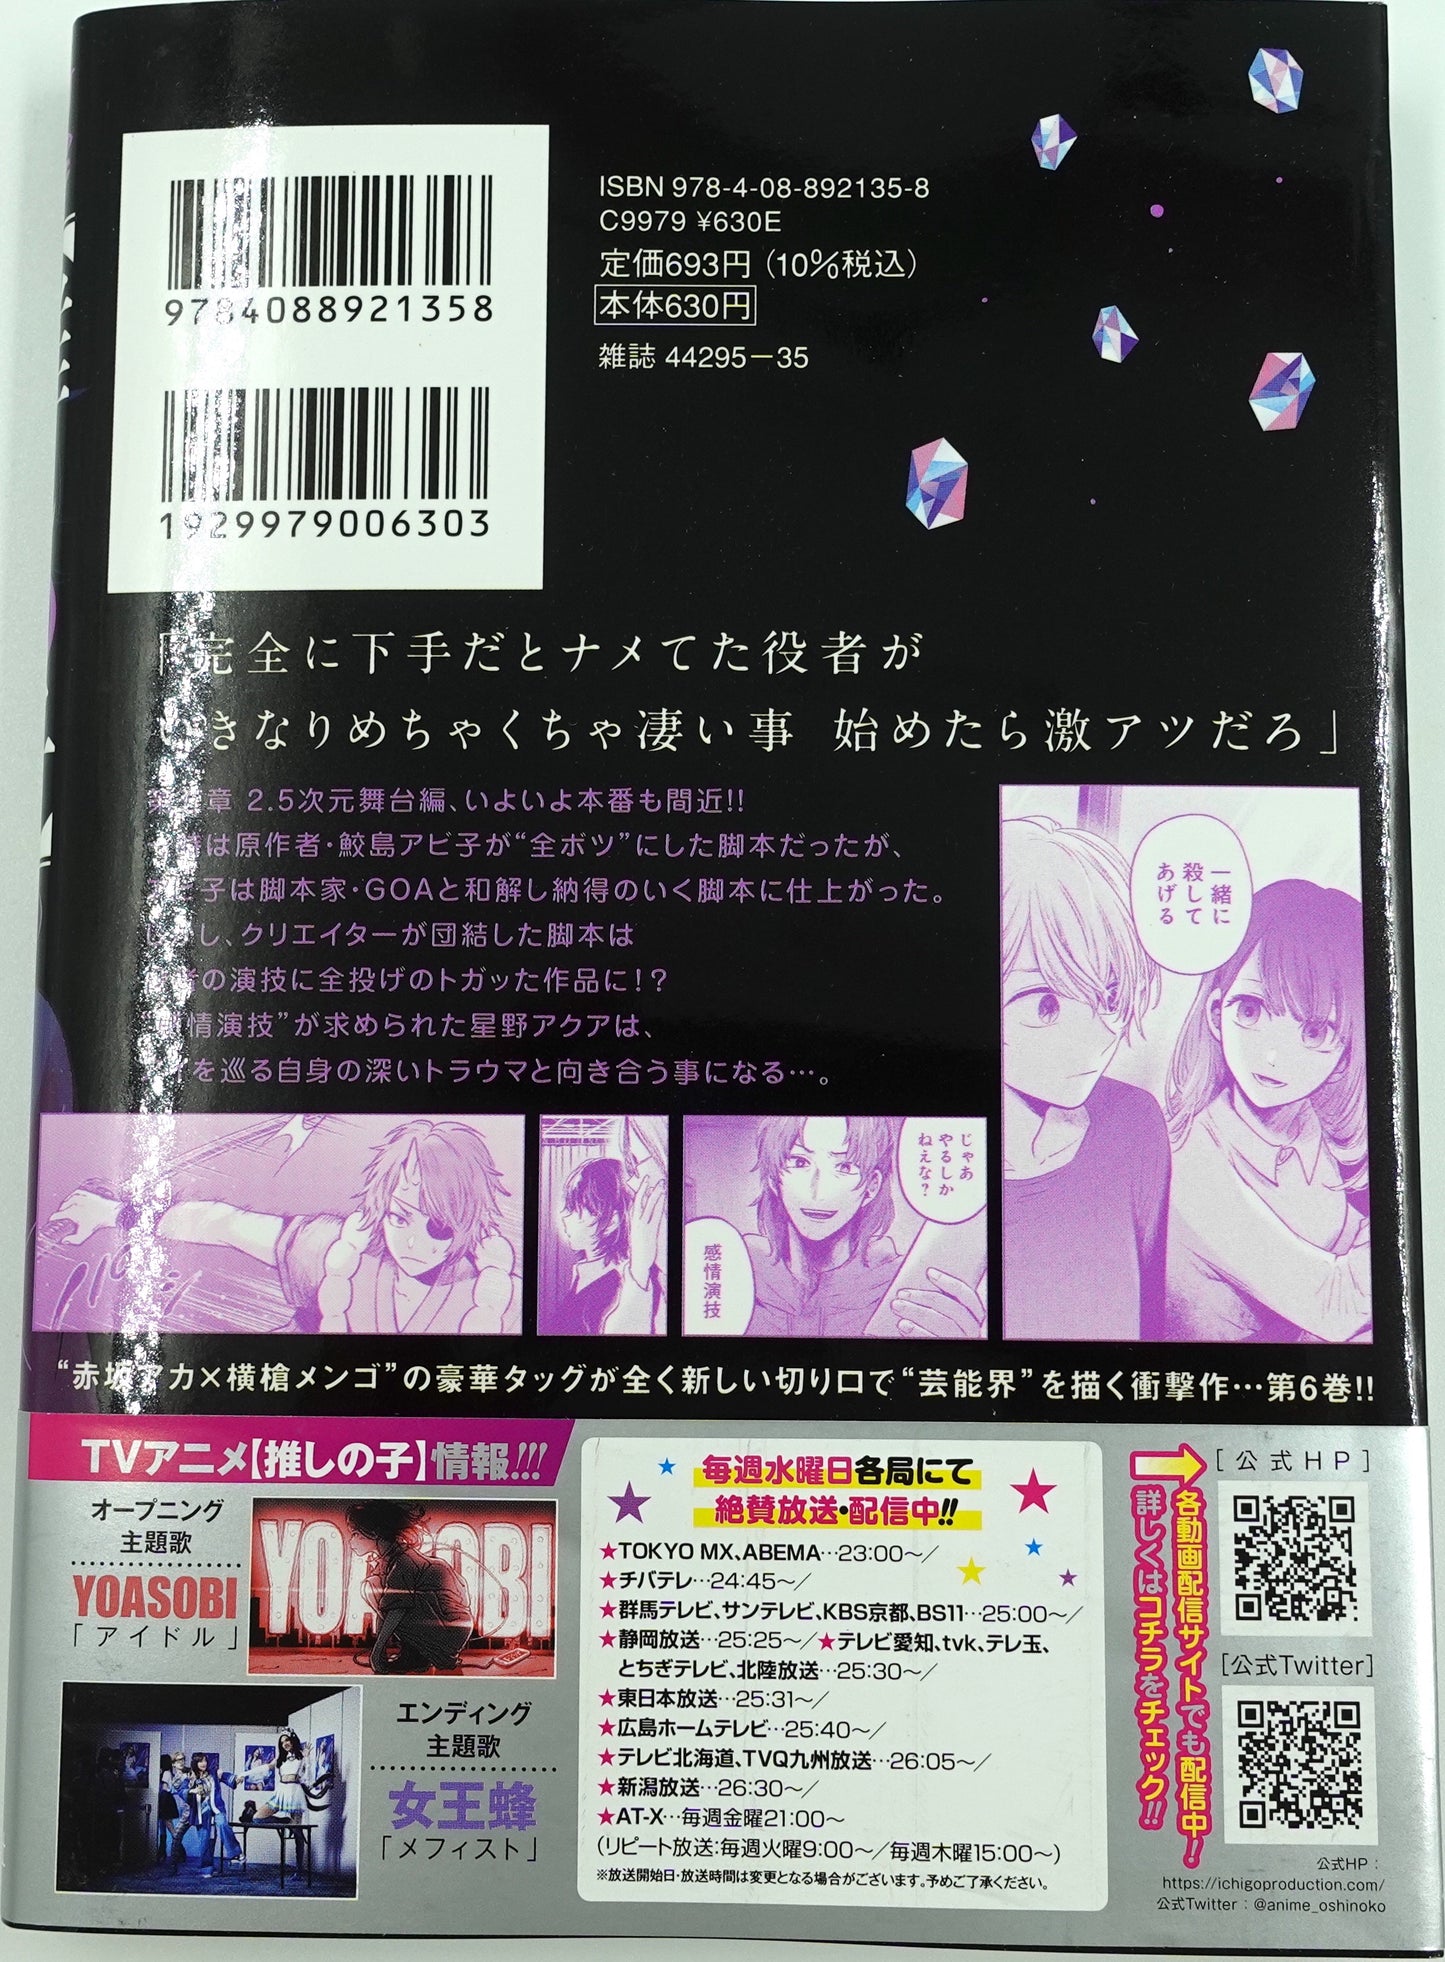 Oshinoko Vol.6 - Official Japanese Edition